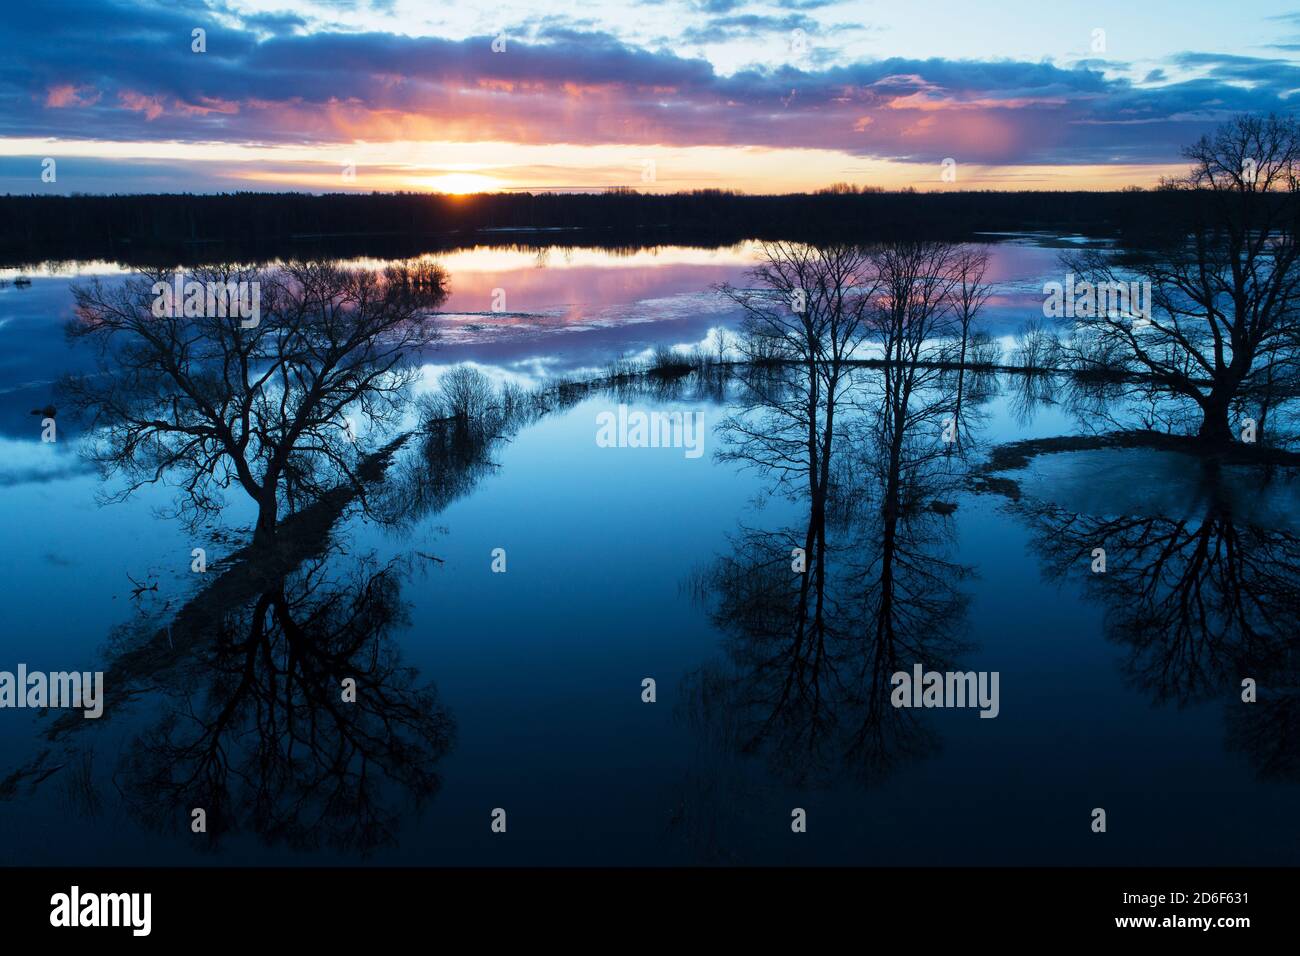 Parco nazionale di Soomaa durante un'inondazione primaverile conosciuta anche come la quinta stagione nella natura estone, l'Europa del Nord. Foto Stock